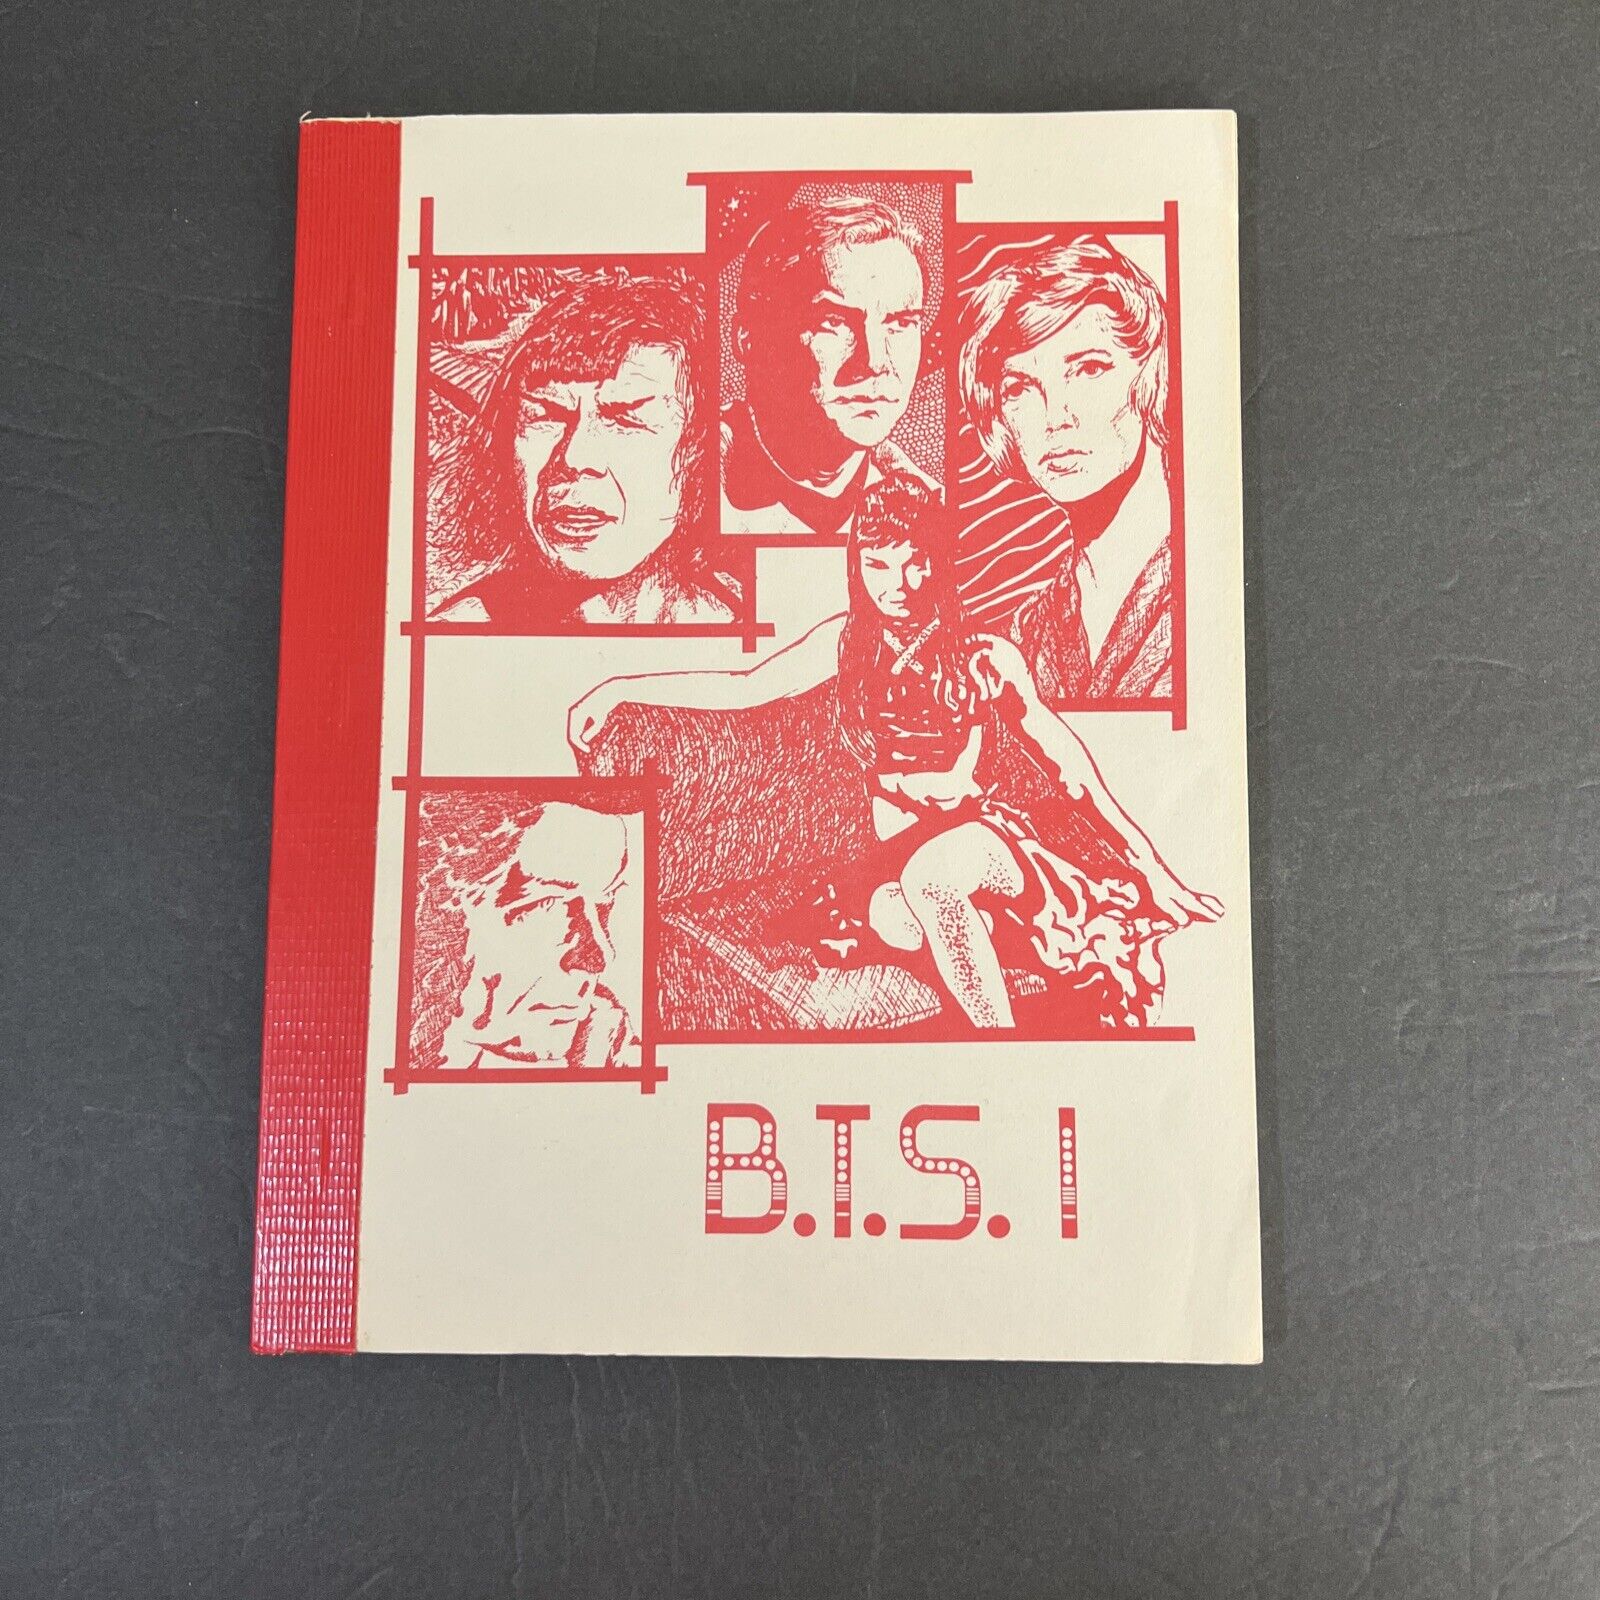 Star Trek B.T.S. 1 Between The Sheets Fanzine by Vel Jaeger Het 1988 Adult VTG